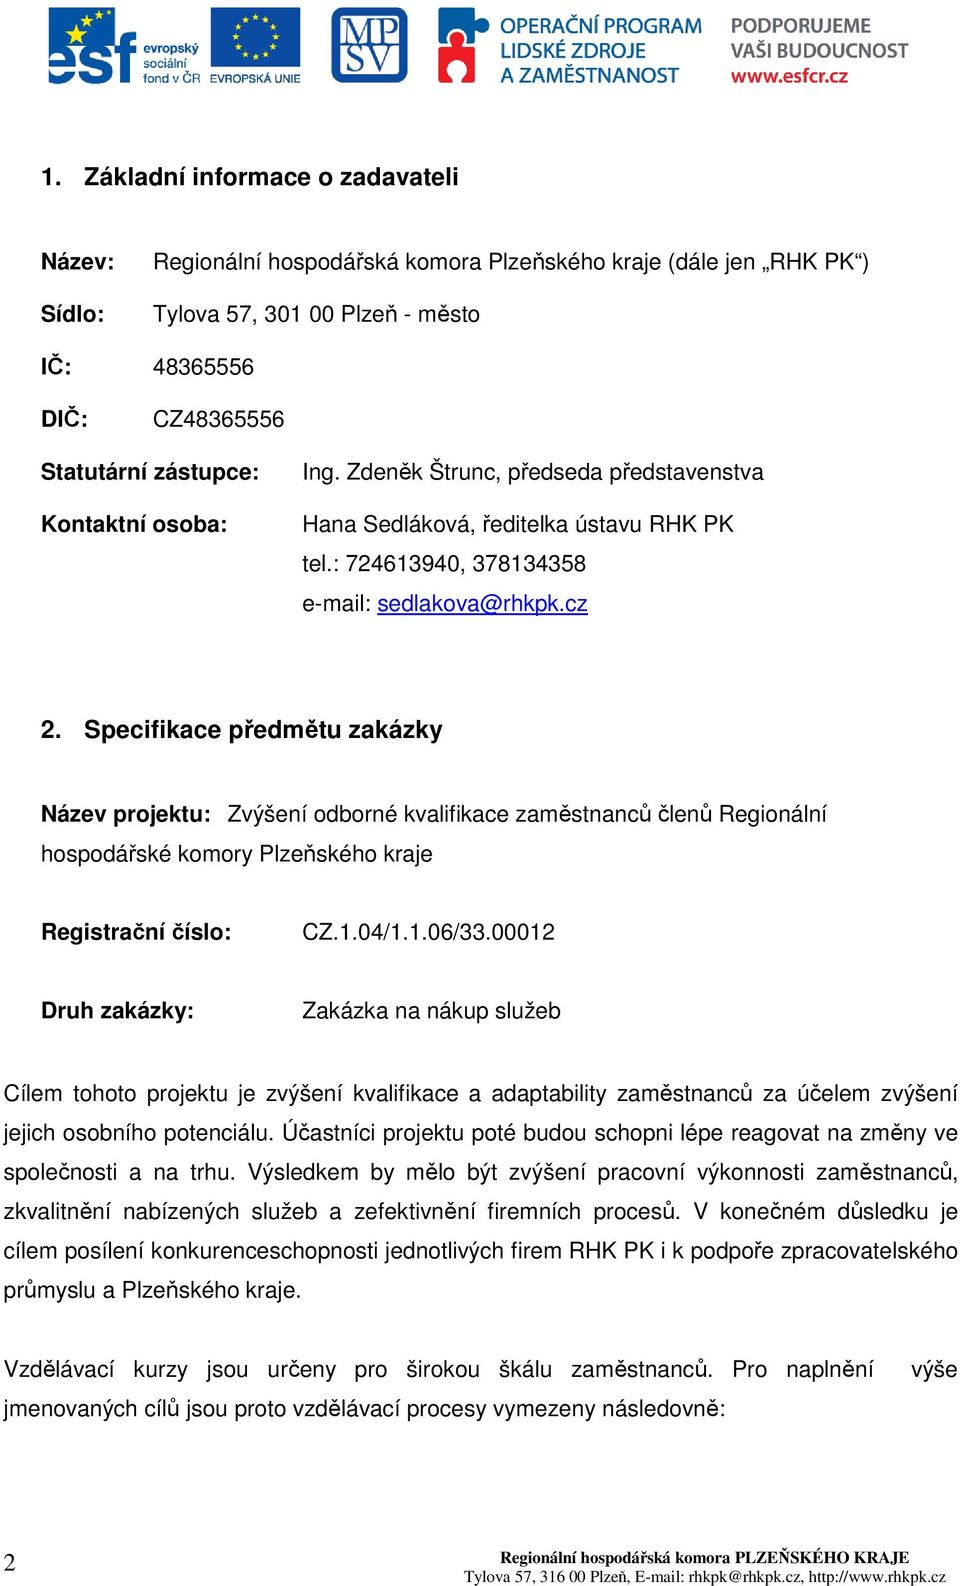 Specifikace předmětu zakázky Název projektu: Zvýšení odborné kvalifikace zaměstnanců členů Regionální hospodářské komory Plzeňského kraje Registrační číslo: CZ.1.04/1.1.06/33.